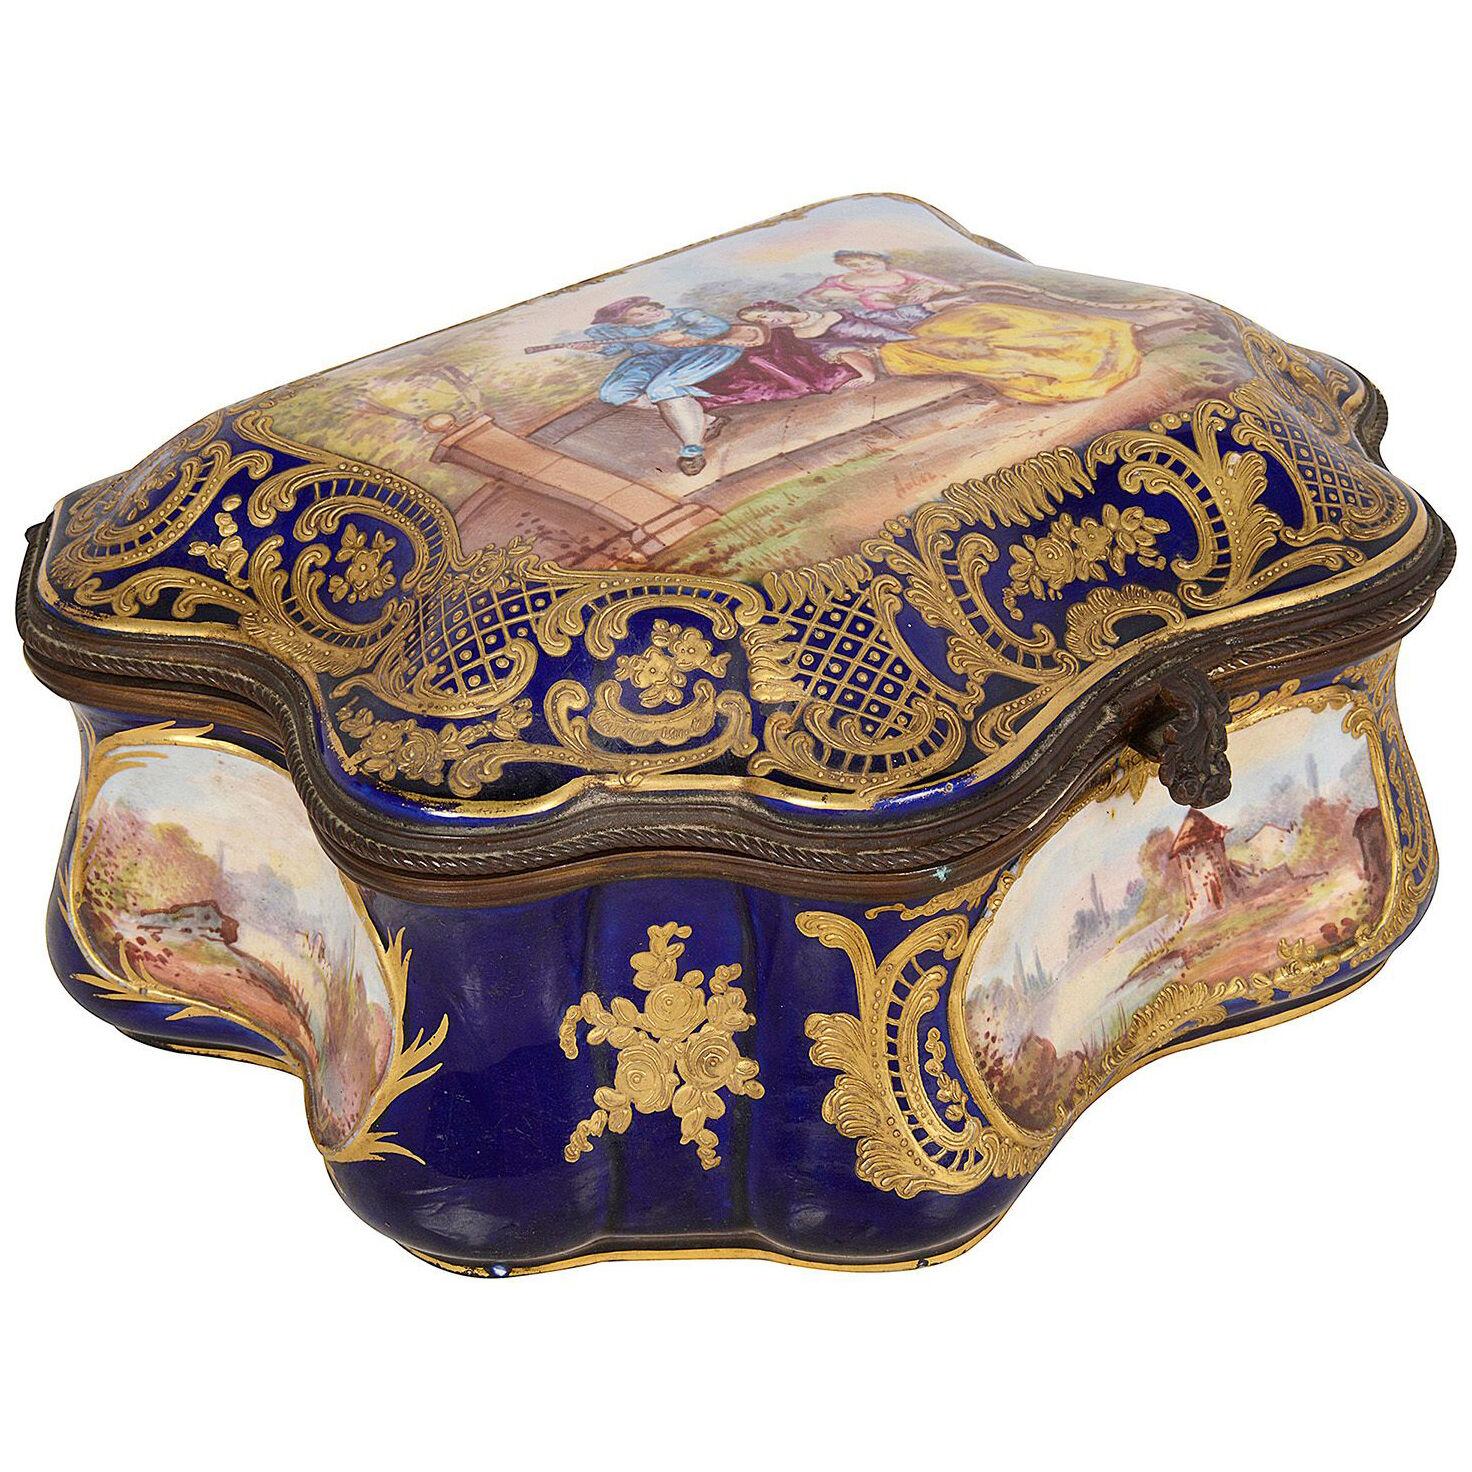 19th Century Sevres style porcelain casket.